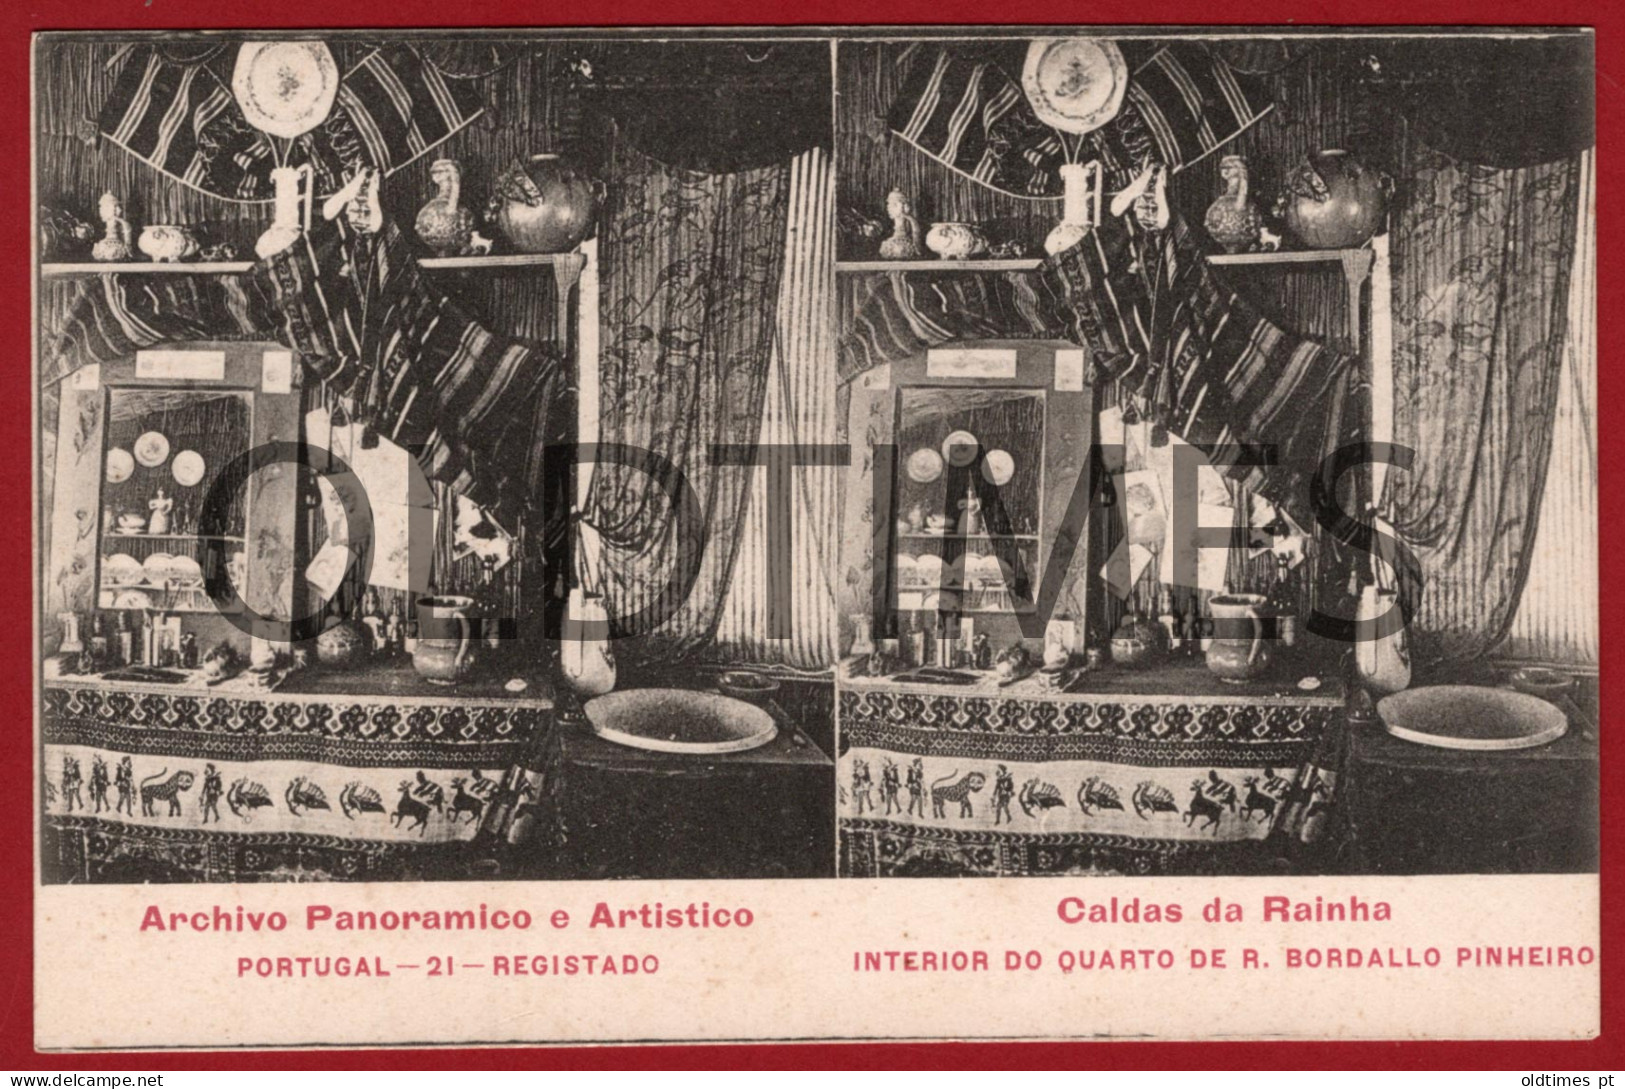 PORTUGAL - ARCHIVO PANORAMICO E ARTISTICO - CALDAS DA RAINHA - QUARTO DE R. BORDALO PINHEIRO - 1910 STEREOSCOPIC PC - Lisboa